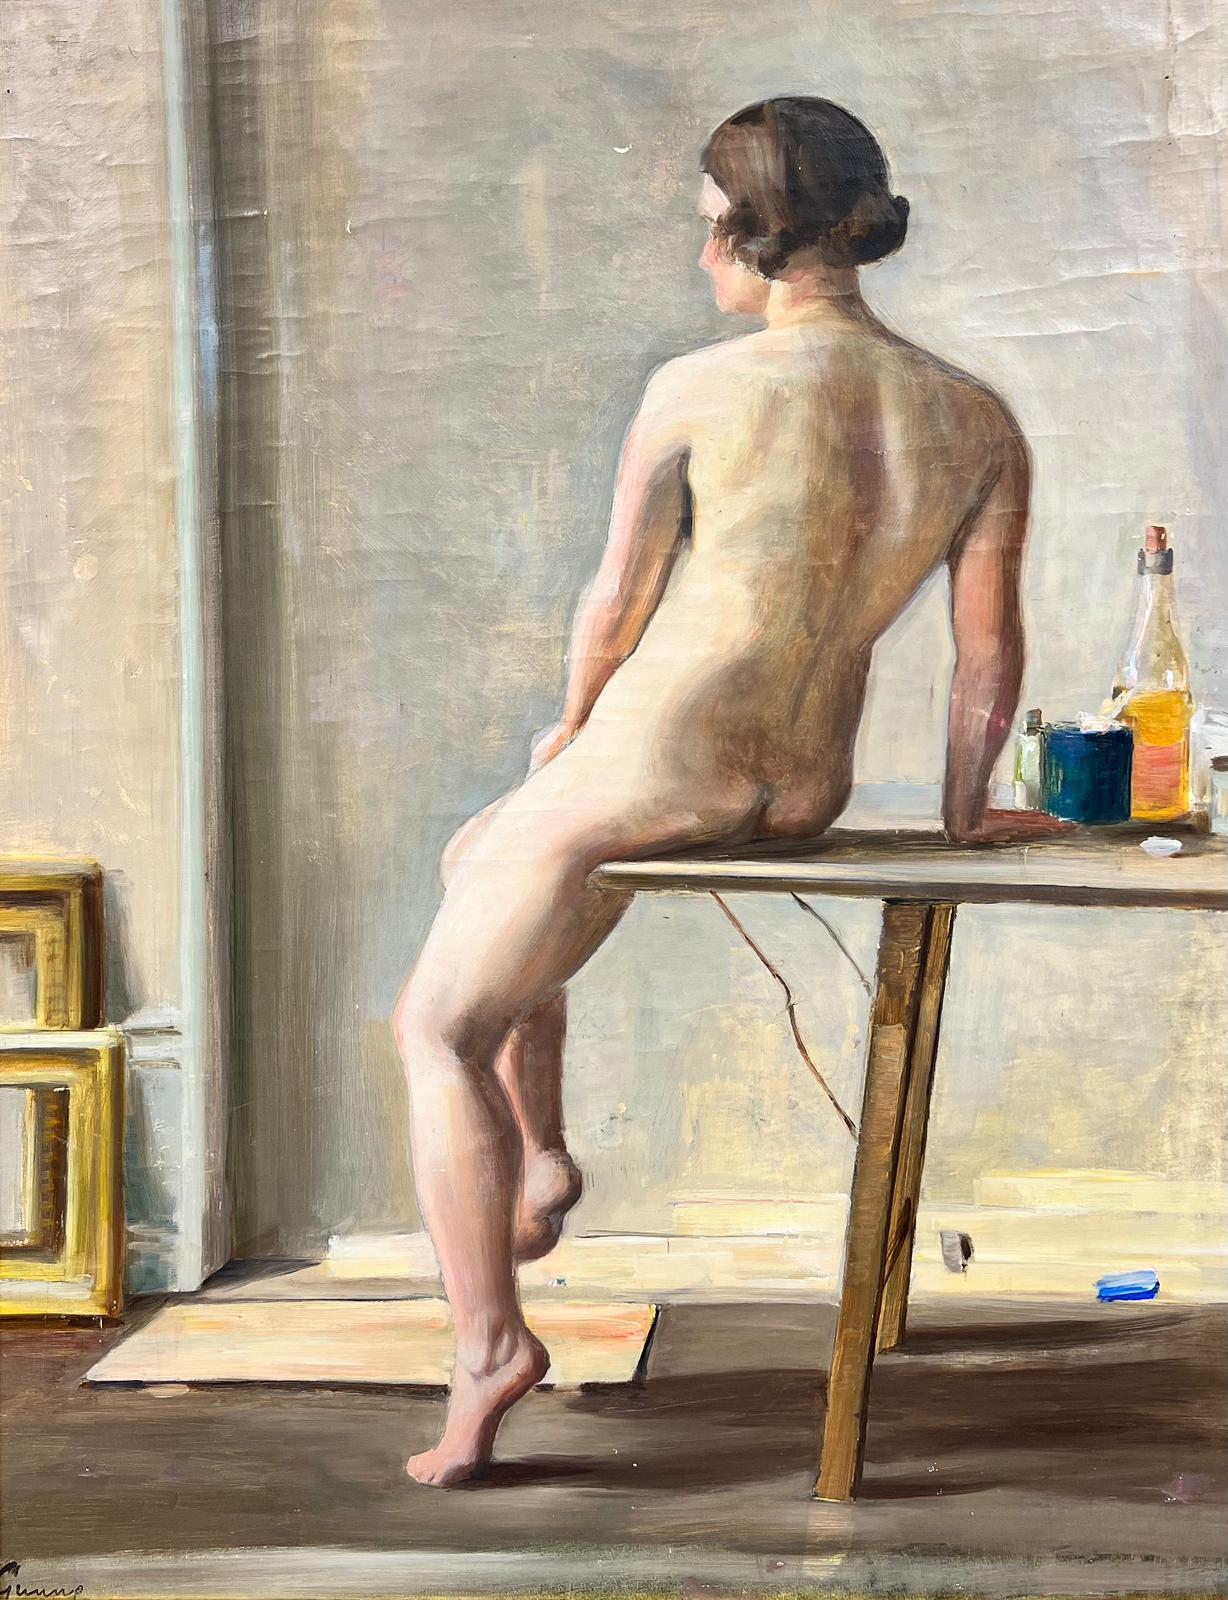 Nude Painting Carl Gunne - Femme nue dans un intérieur Modèle d'artiste Suédois du milieu du siècle Huile sur toile encadrée